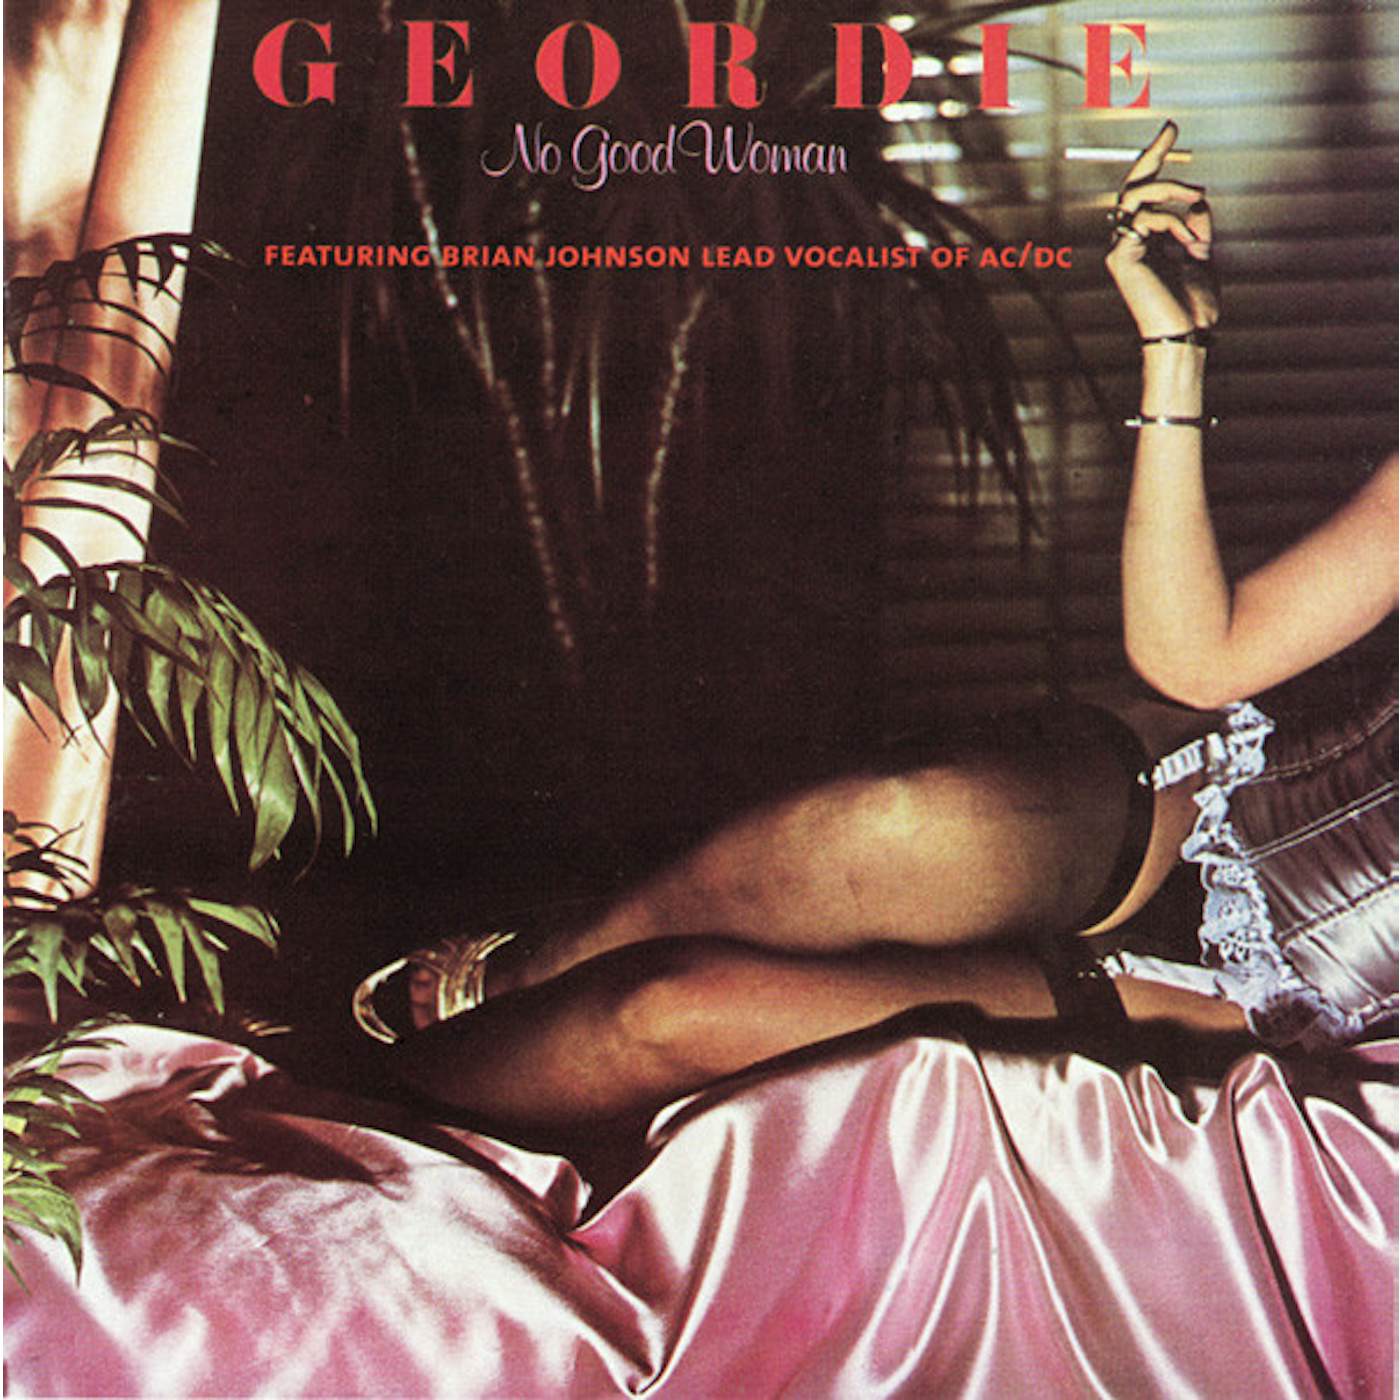 Geordie No Good Woman Vinyl Record